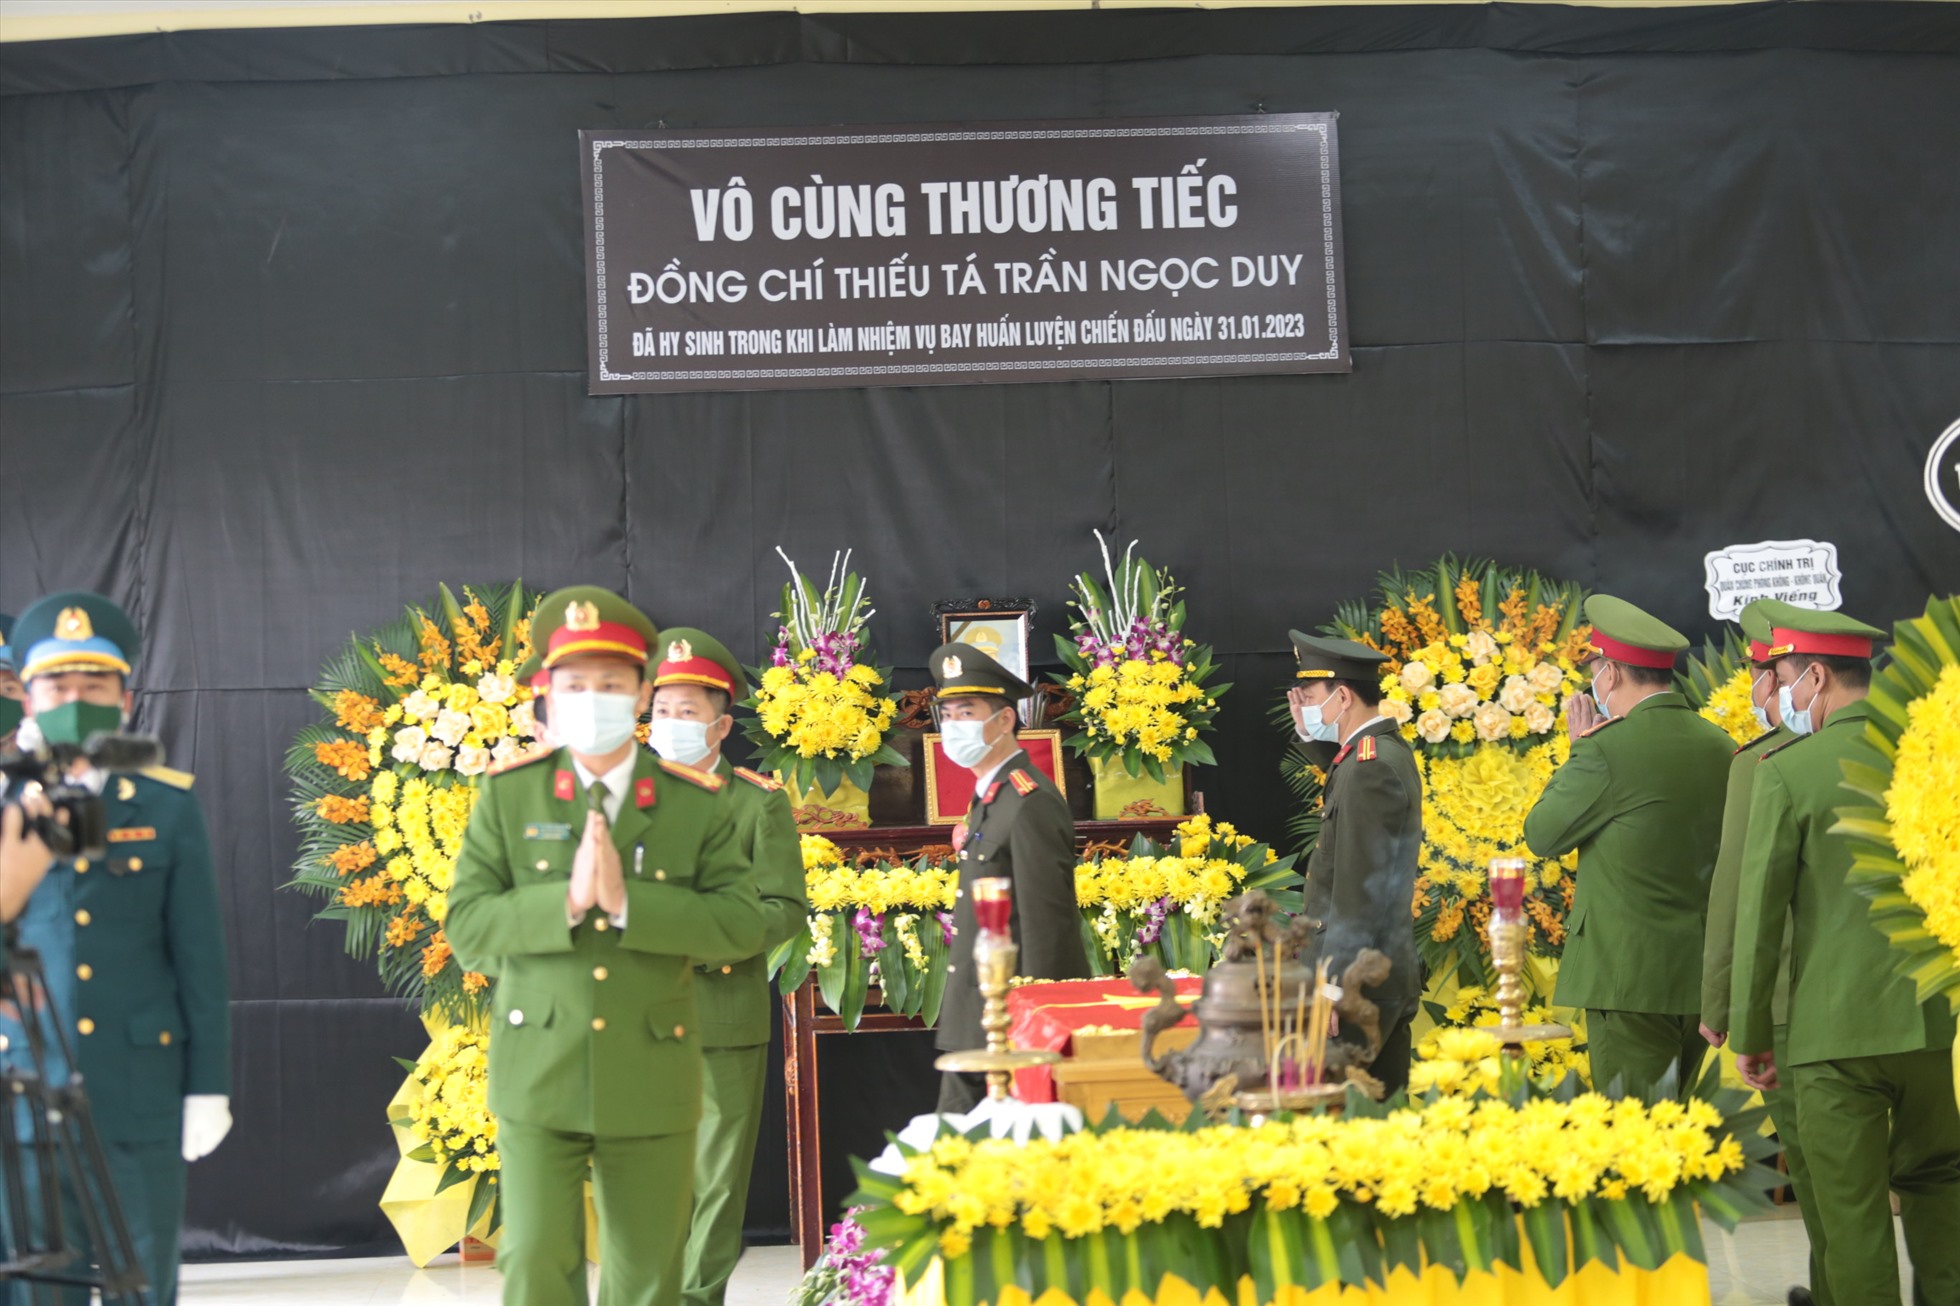 Rất đông đồng đội và người thân cùng các cơ quan chức năng đến viếng thiếu tá Trần Ngọc Duy.